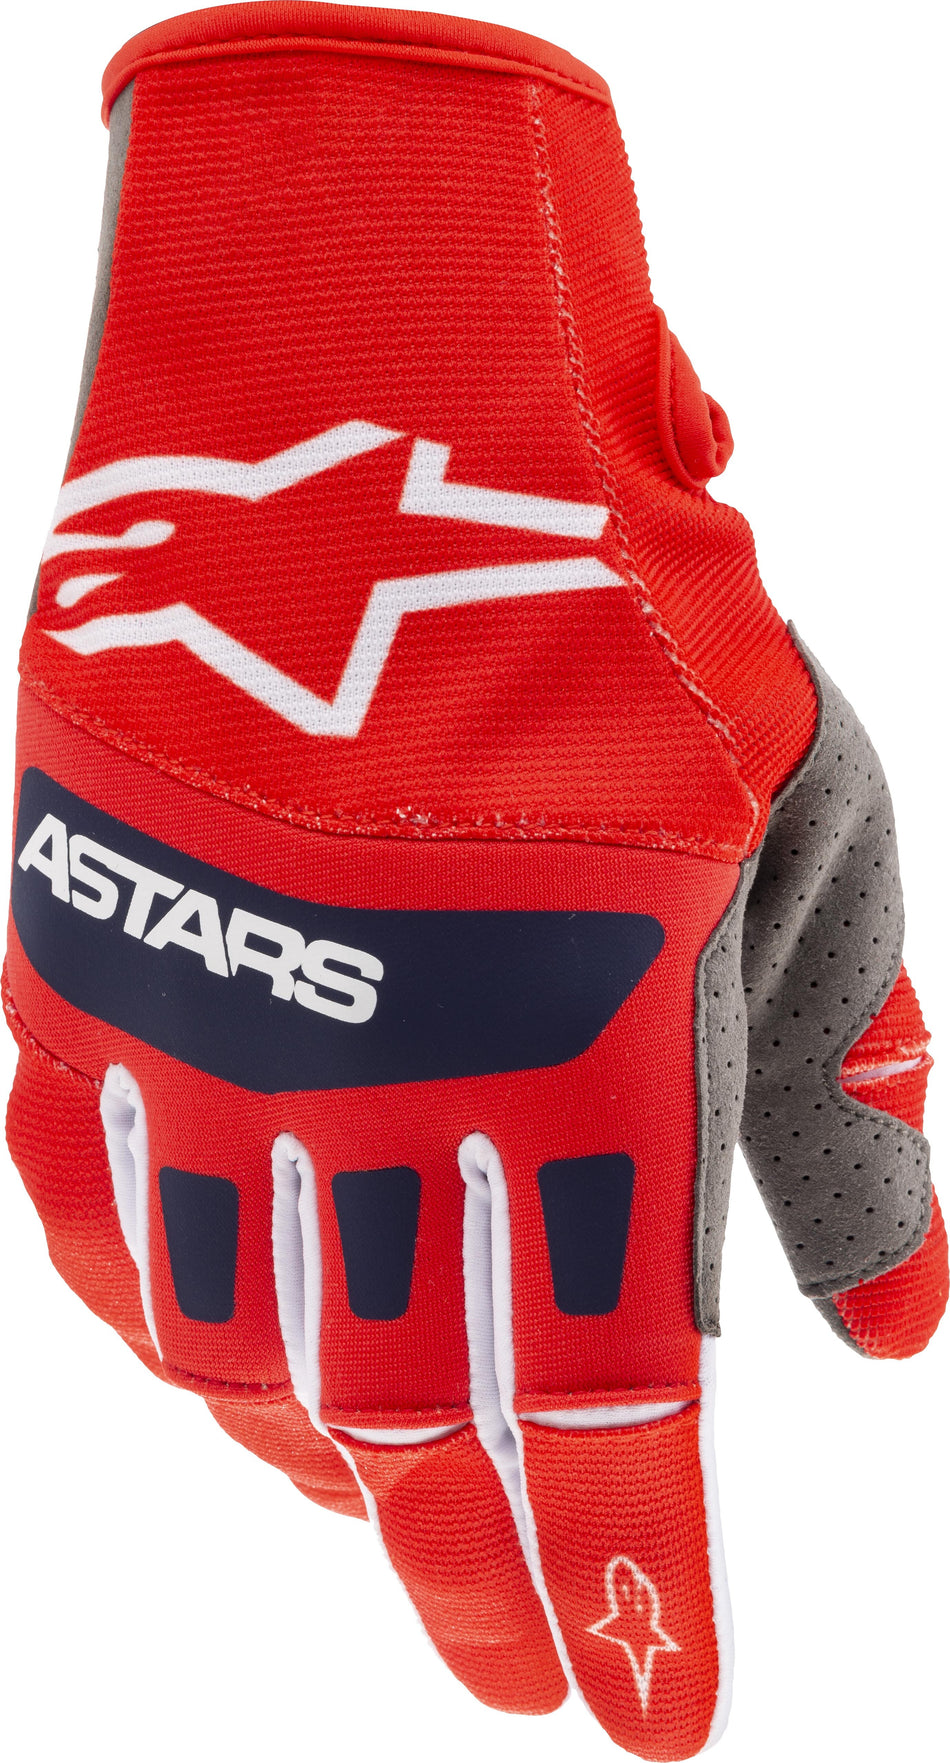 ALPINESTARS Techstar Gloves Bright Red/ White/Dark Blue Md 3561021-337-M